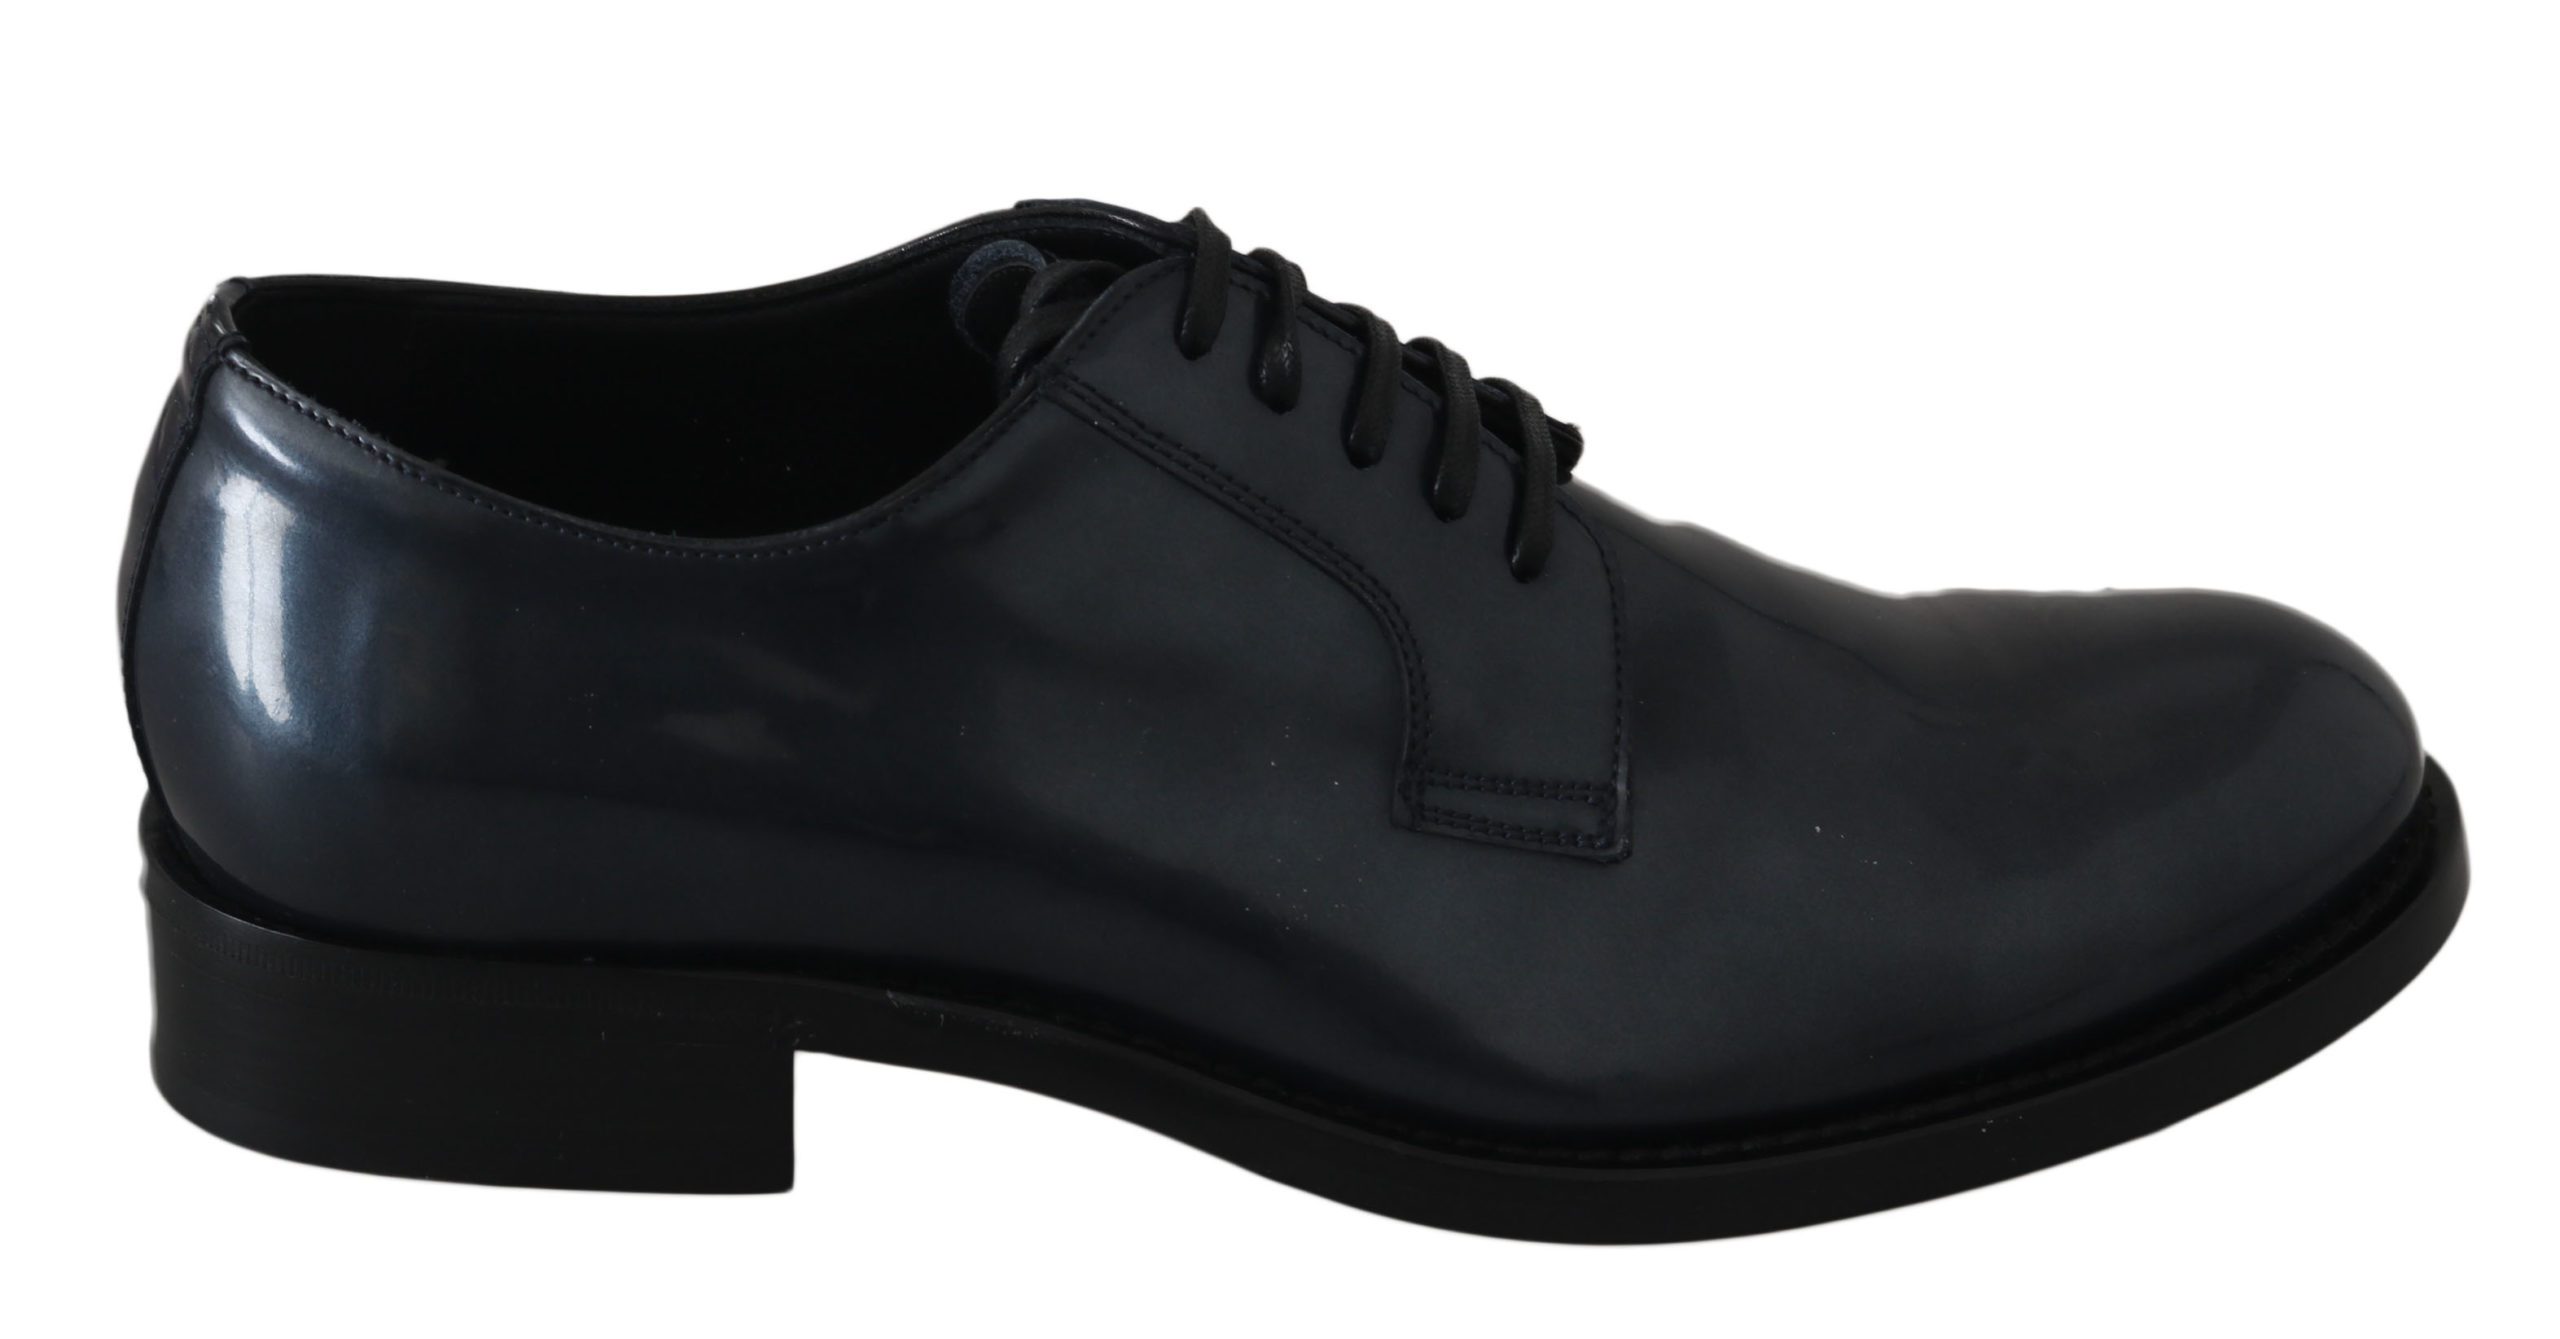 Dolce & Gabbana Men's Leather Derby Shoes Blue MV2436 - EU39/US6